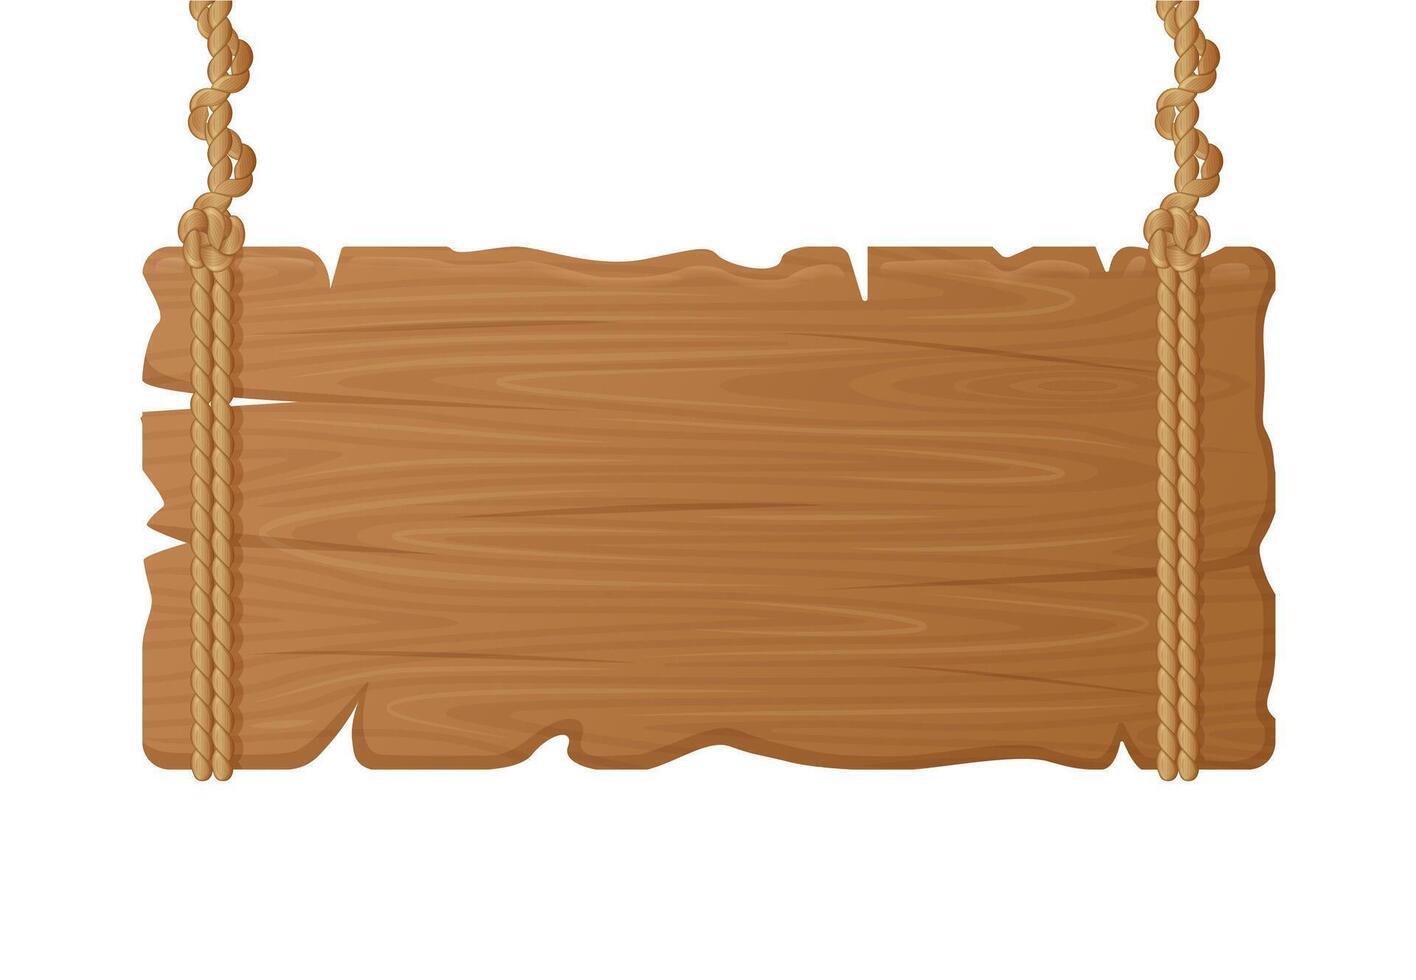 houten hangende bord. hout leeg uithangbord Aan touw, wijnoogst blanco aanplakbord, opgehangen hout bord plank vector illustratie